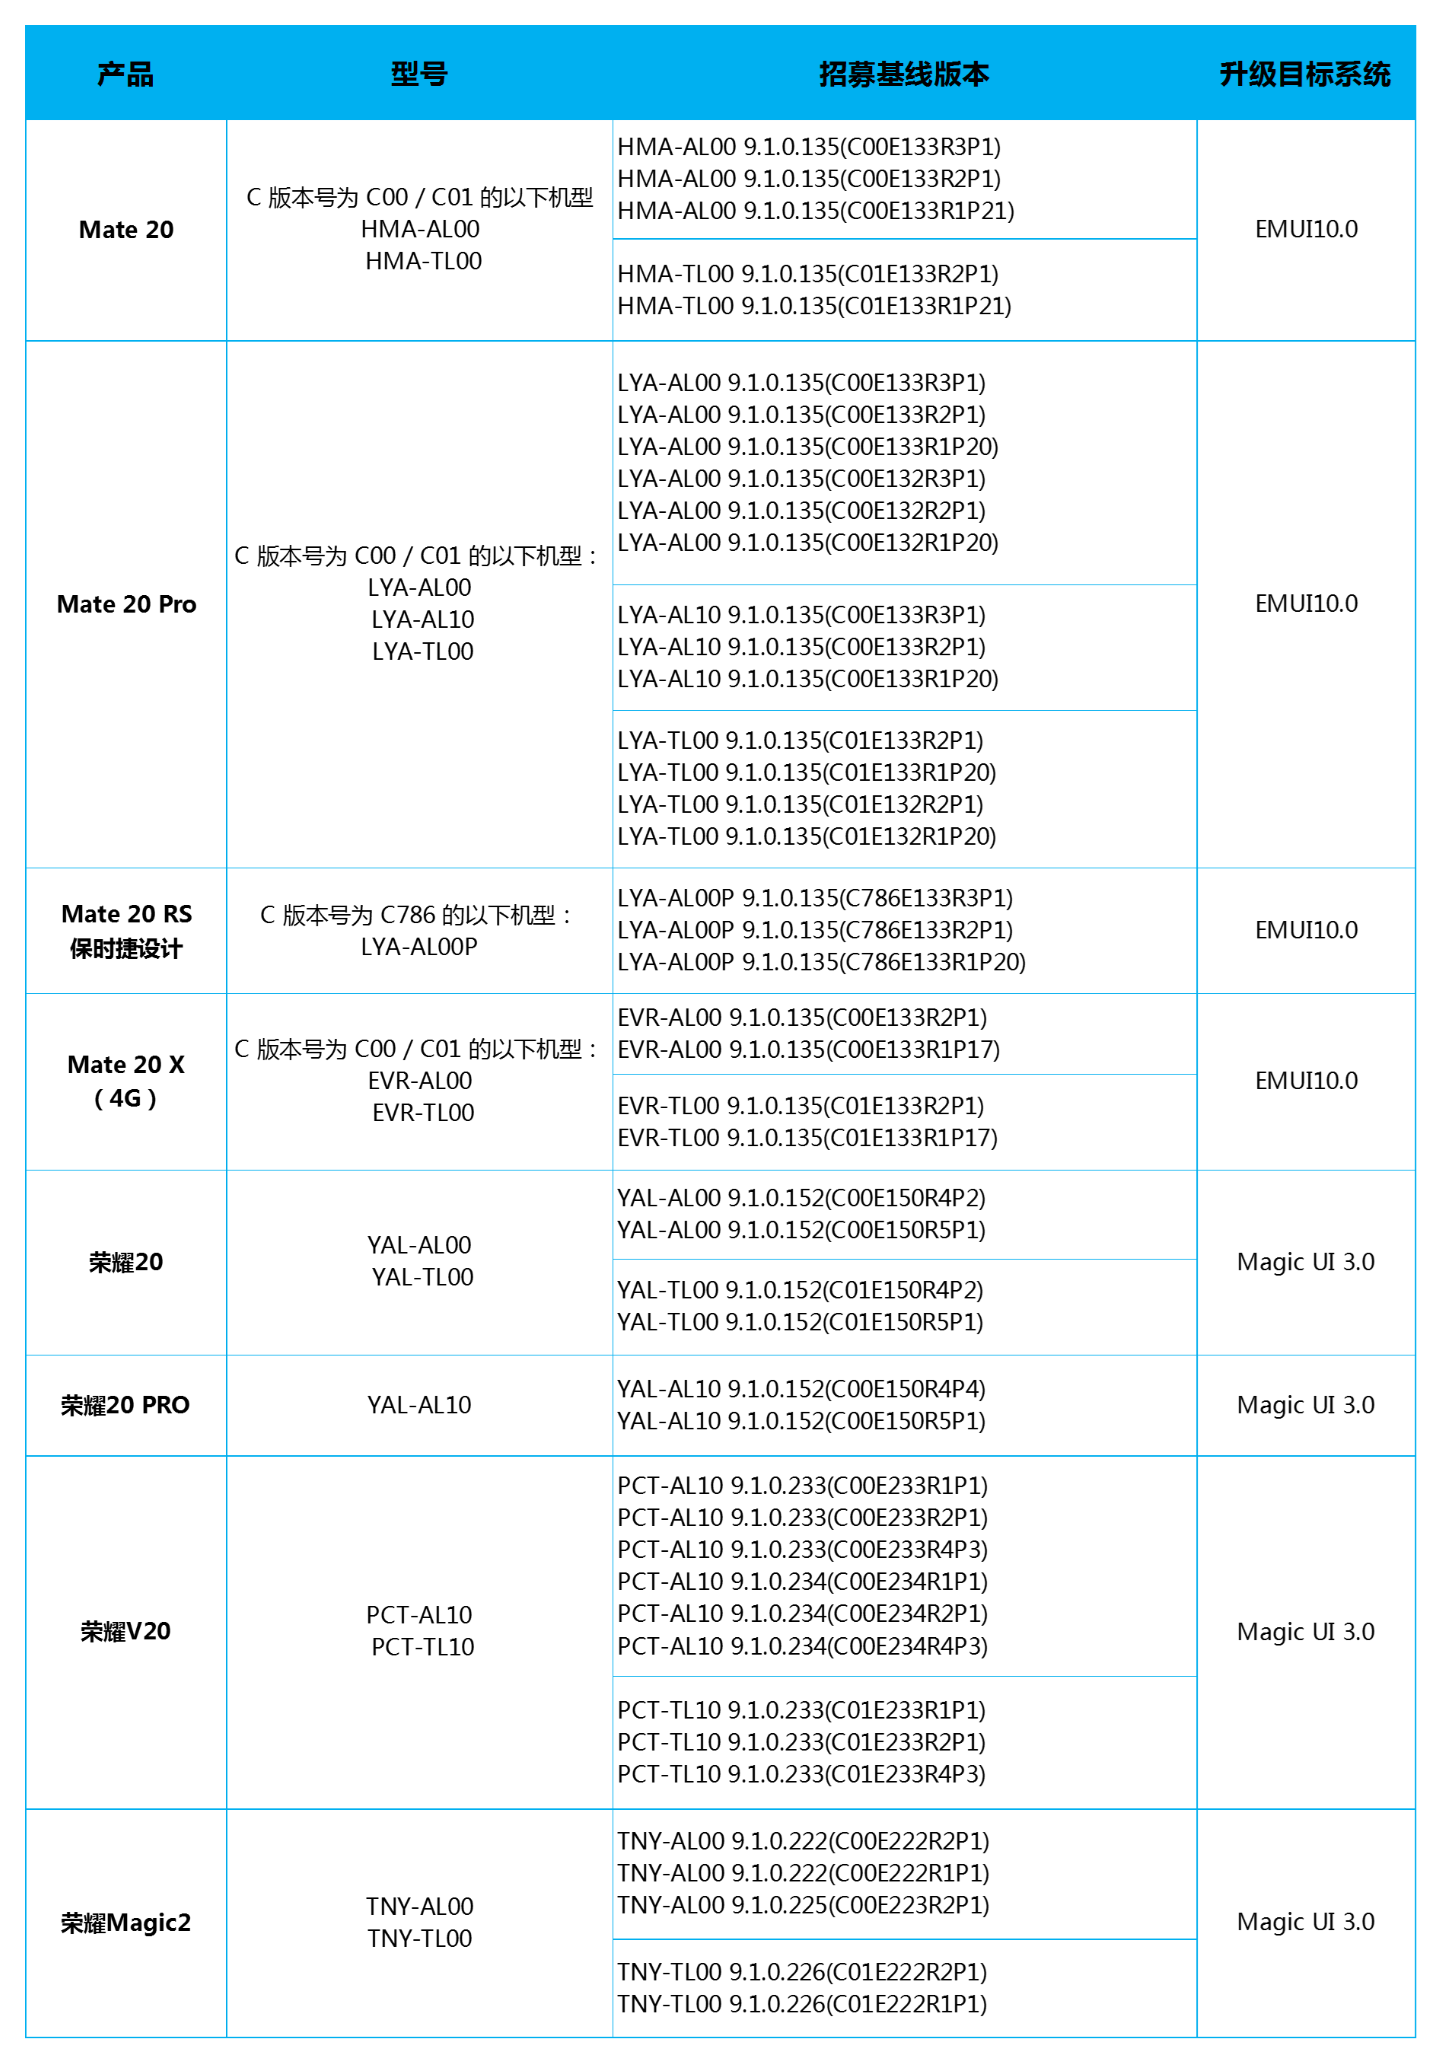 أعلنت Huawei عن برنامج EMUI 10 beta لـ Mate 20 و Mate 20 Pro / RS و Mate 20 X و Honor 20 و 20 Pro و V20 و Magic 2 1